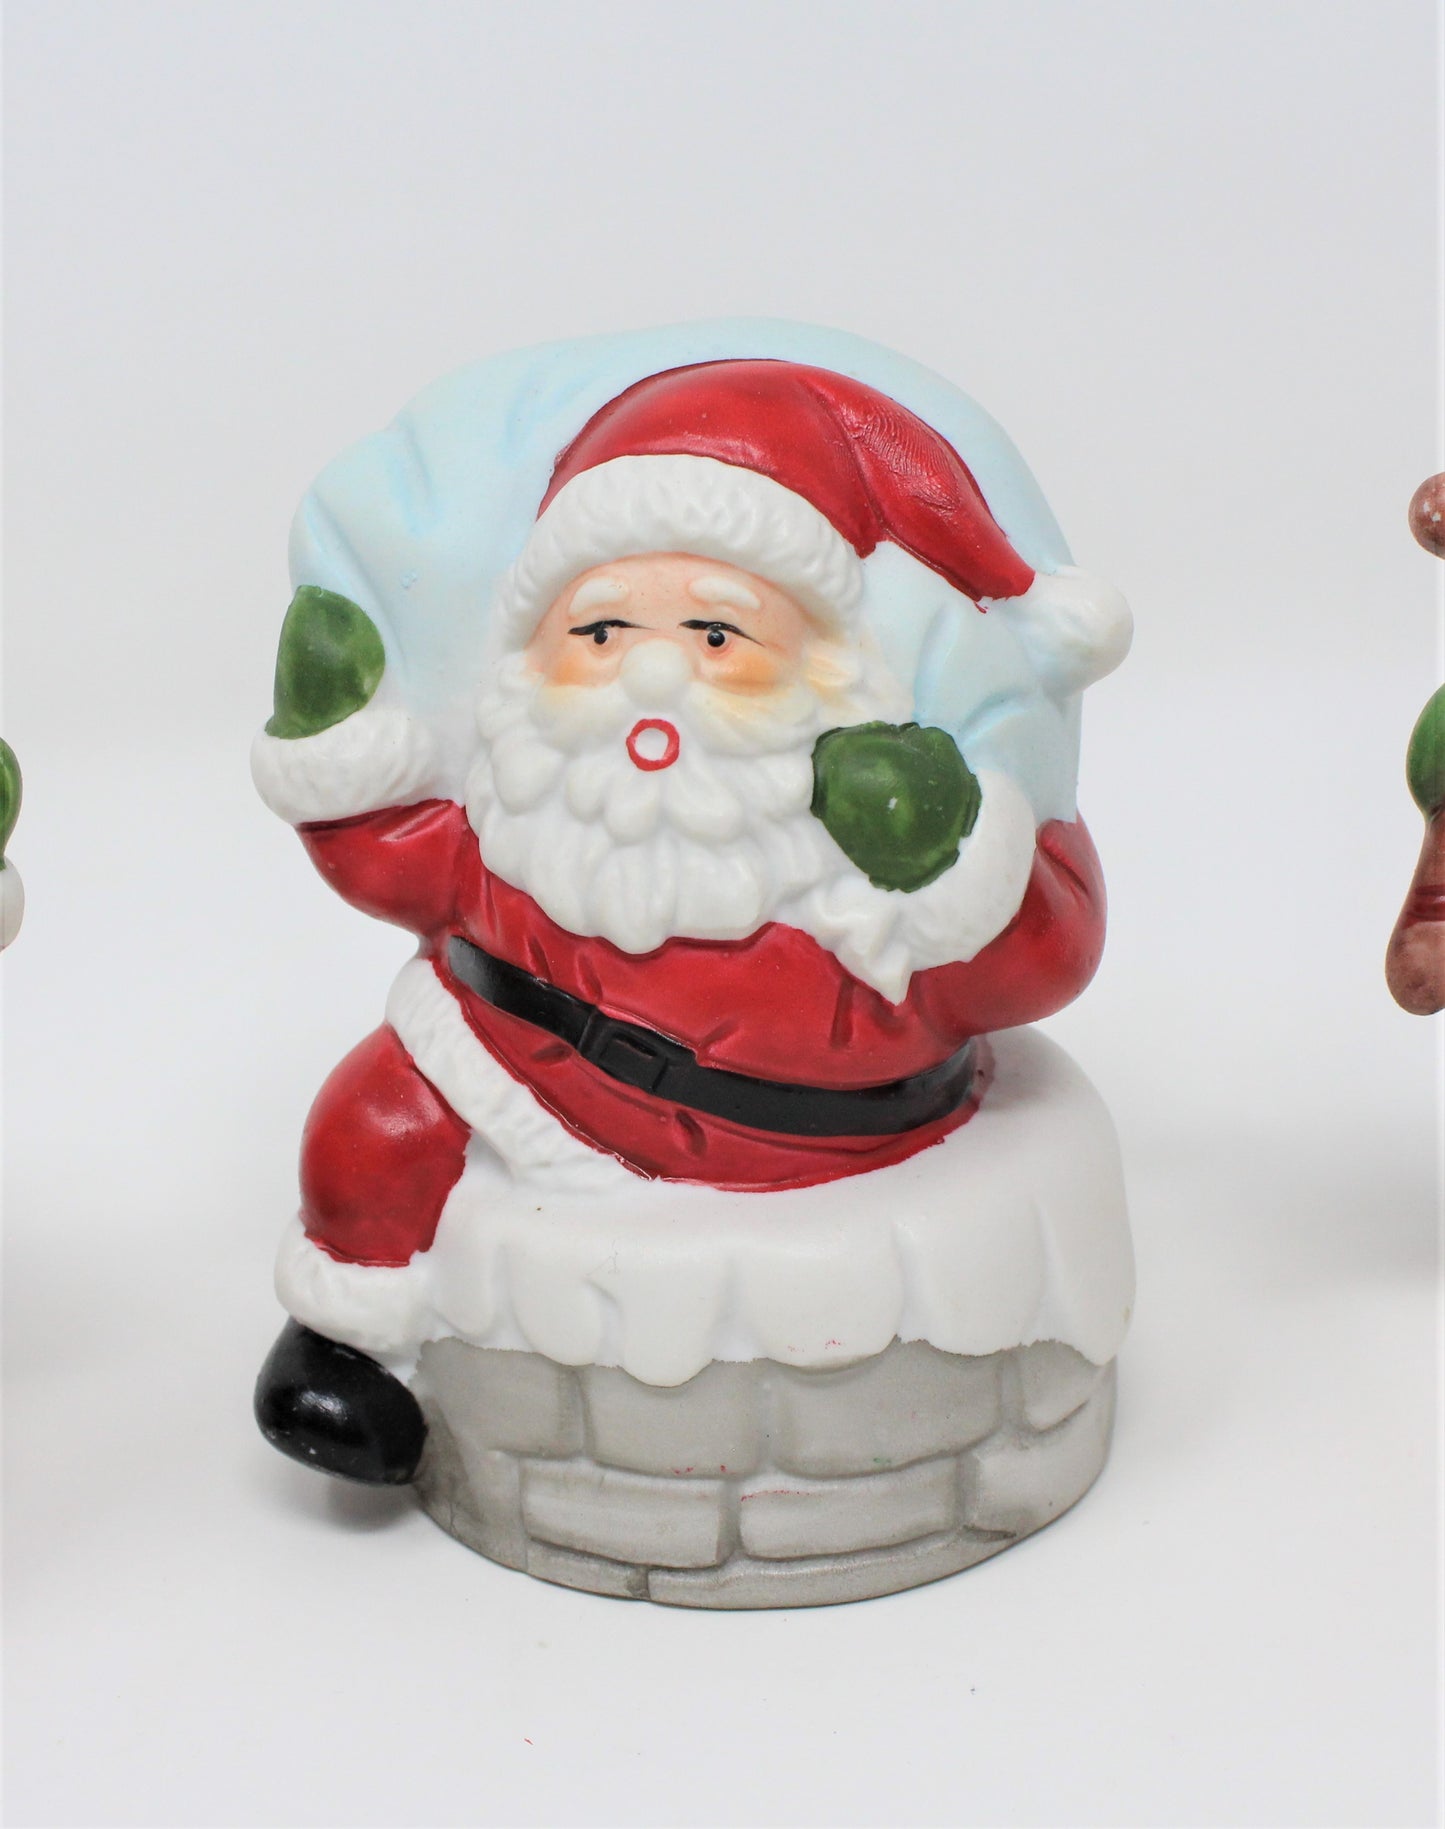 Figurine, ArtMark, Here Comes Santa, Set of 3, Vintage in Box